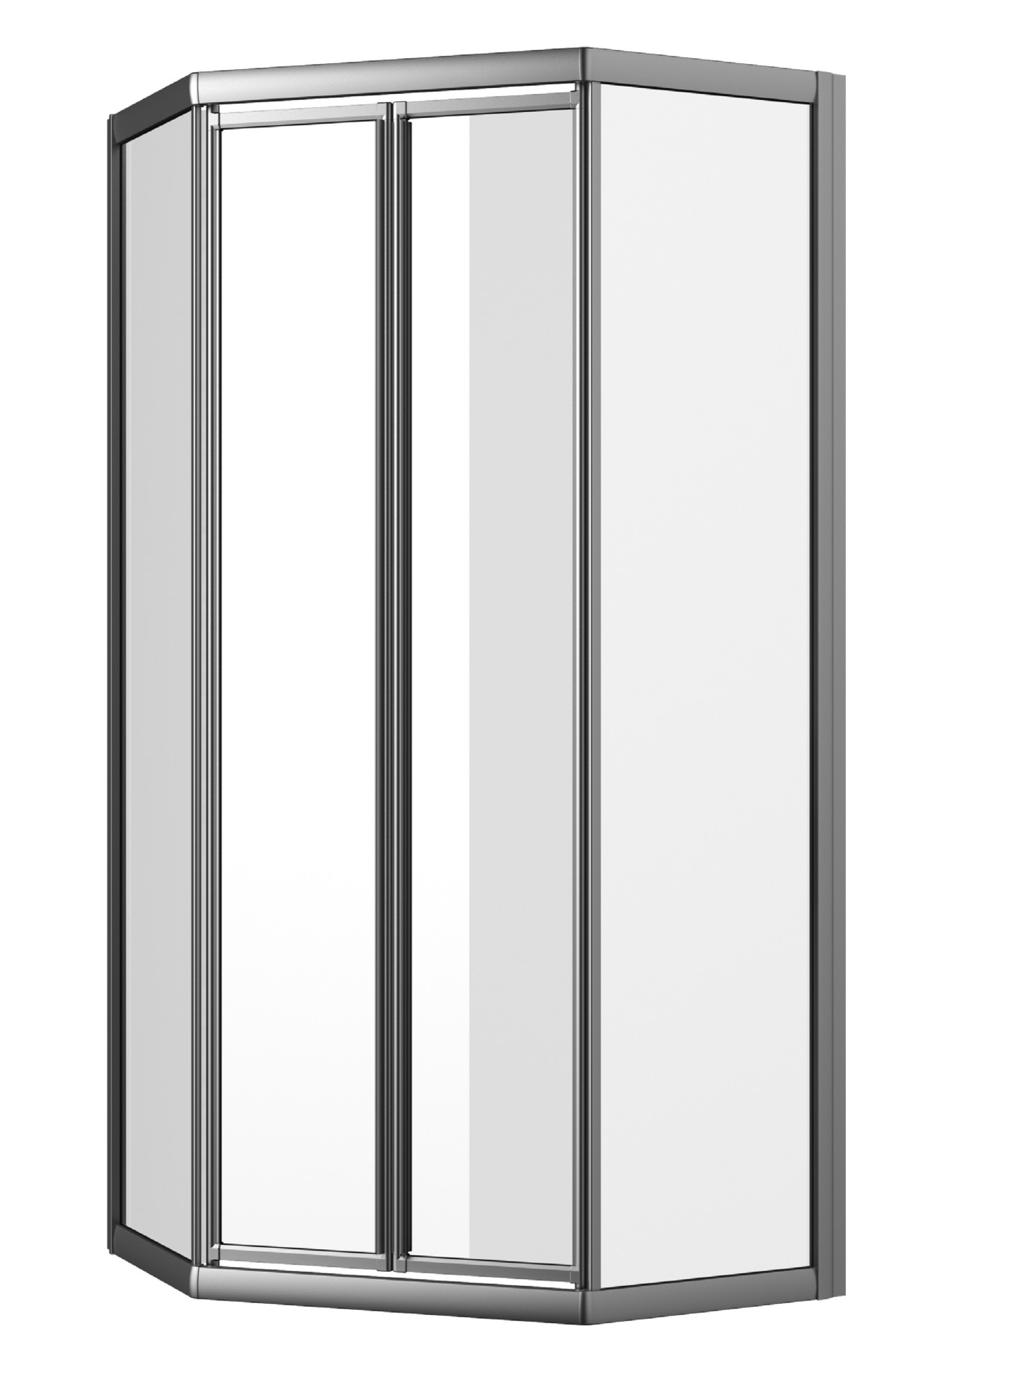 5-Eck Pendeltür, 185 cm, 4teilig (große Abbildung) mit 2 Pendeltüren, nach innen und außen zu öffnen, Rahmen: silber